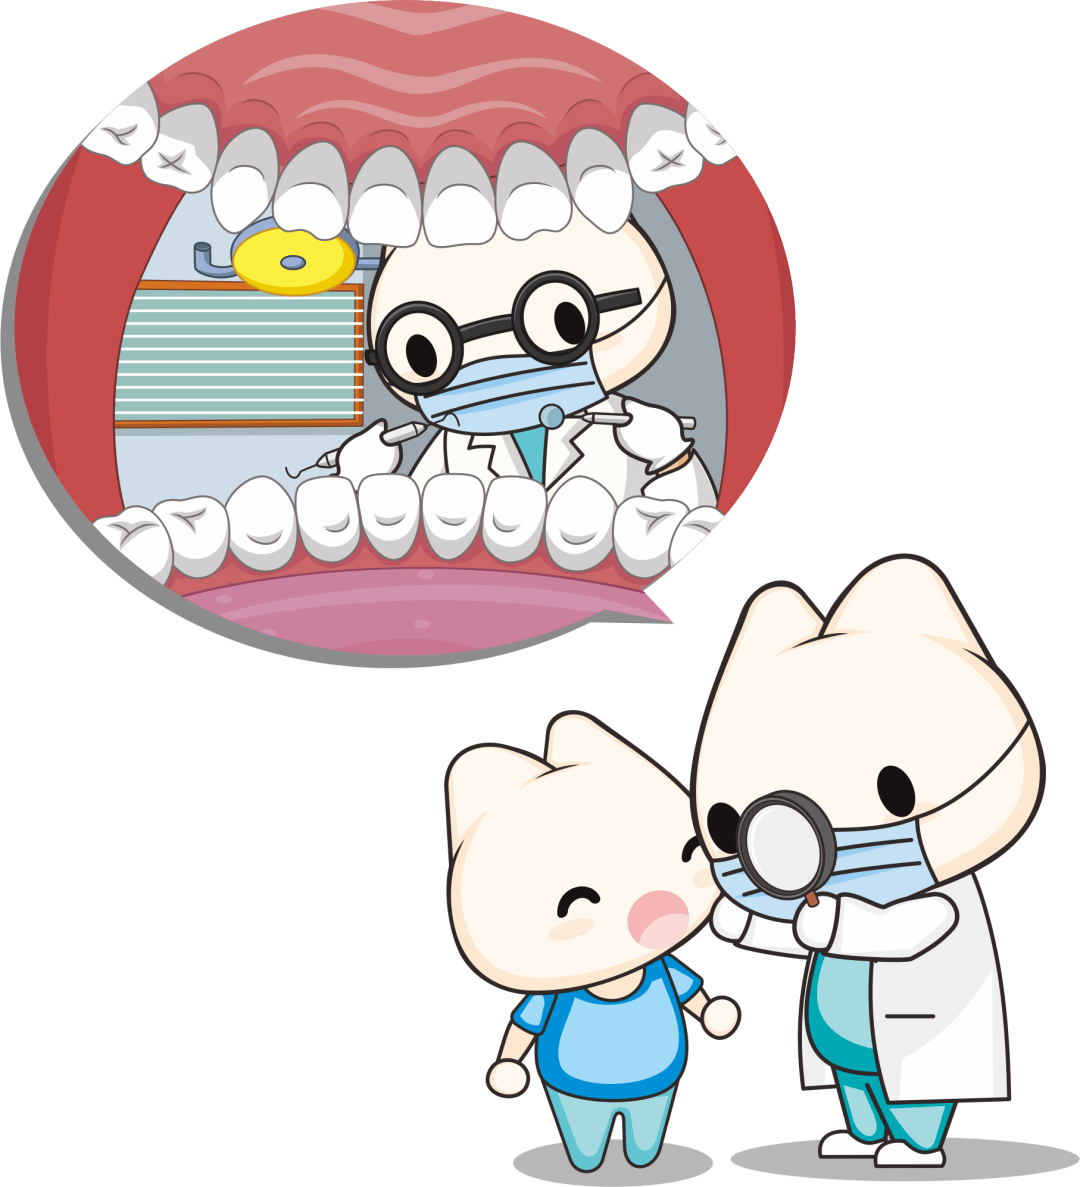 原创用牙膏可以补牙洞牙医提醒儿童蛀牙应做好预防科学治疗